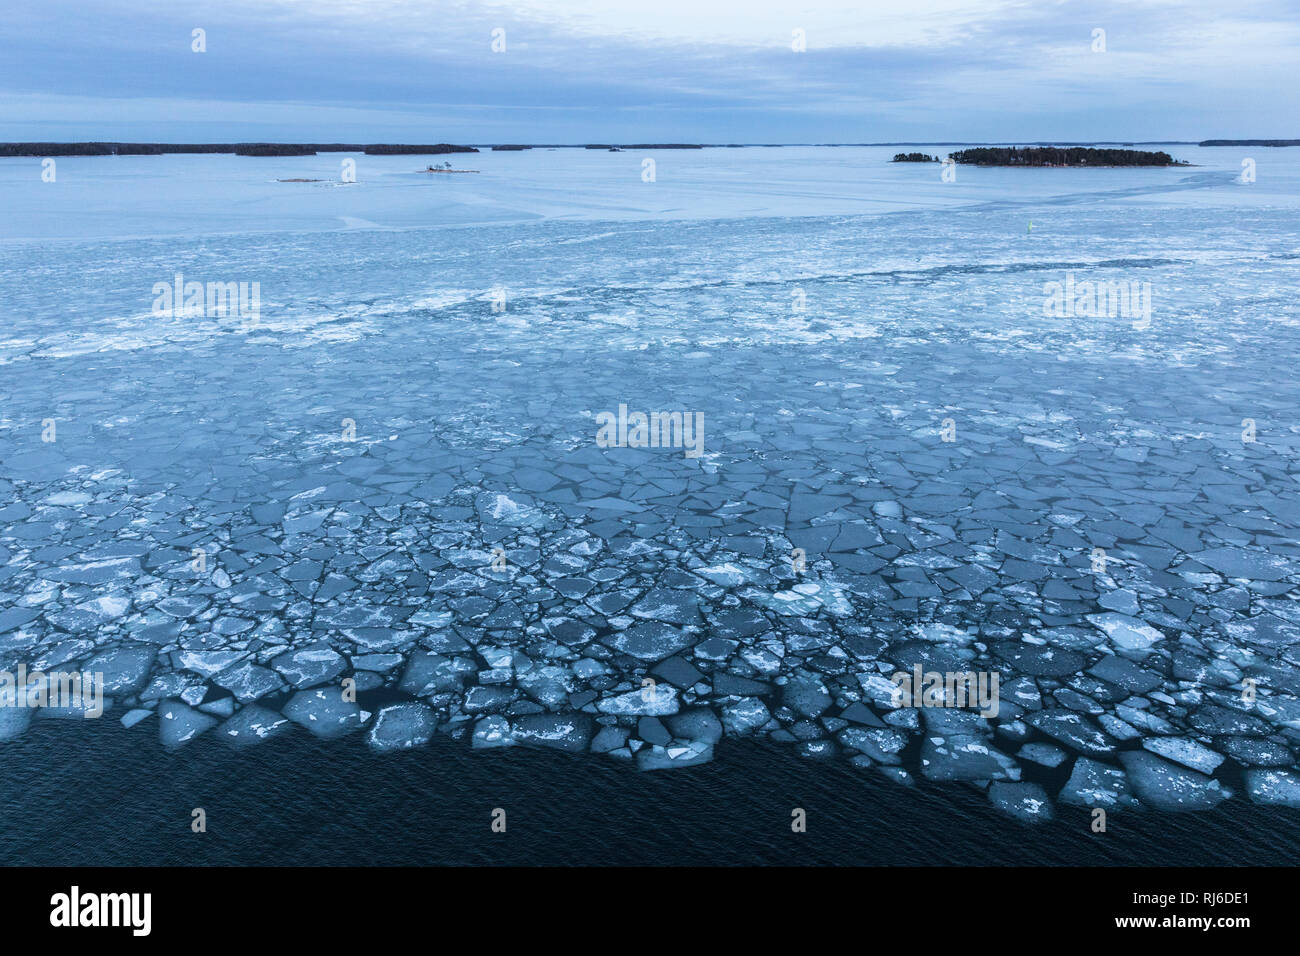 Finnland, Helsinki, Eisschollen auf der Ostsee mit Landschaft Stock Photo